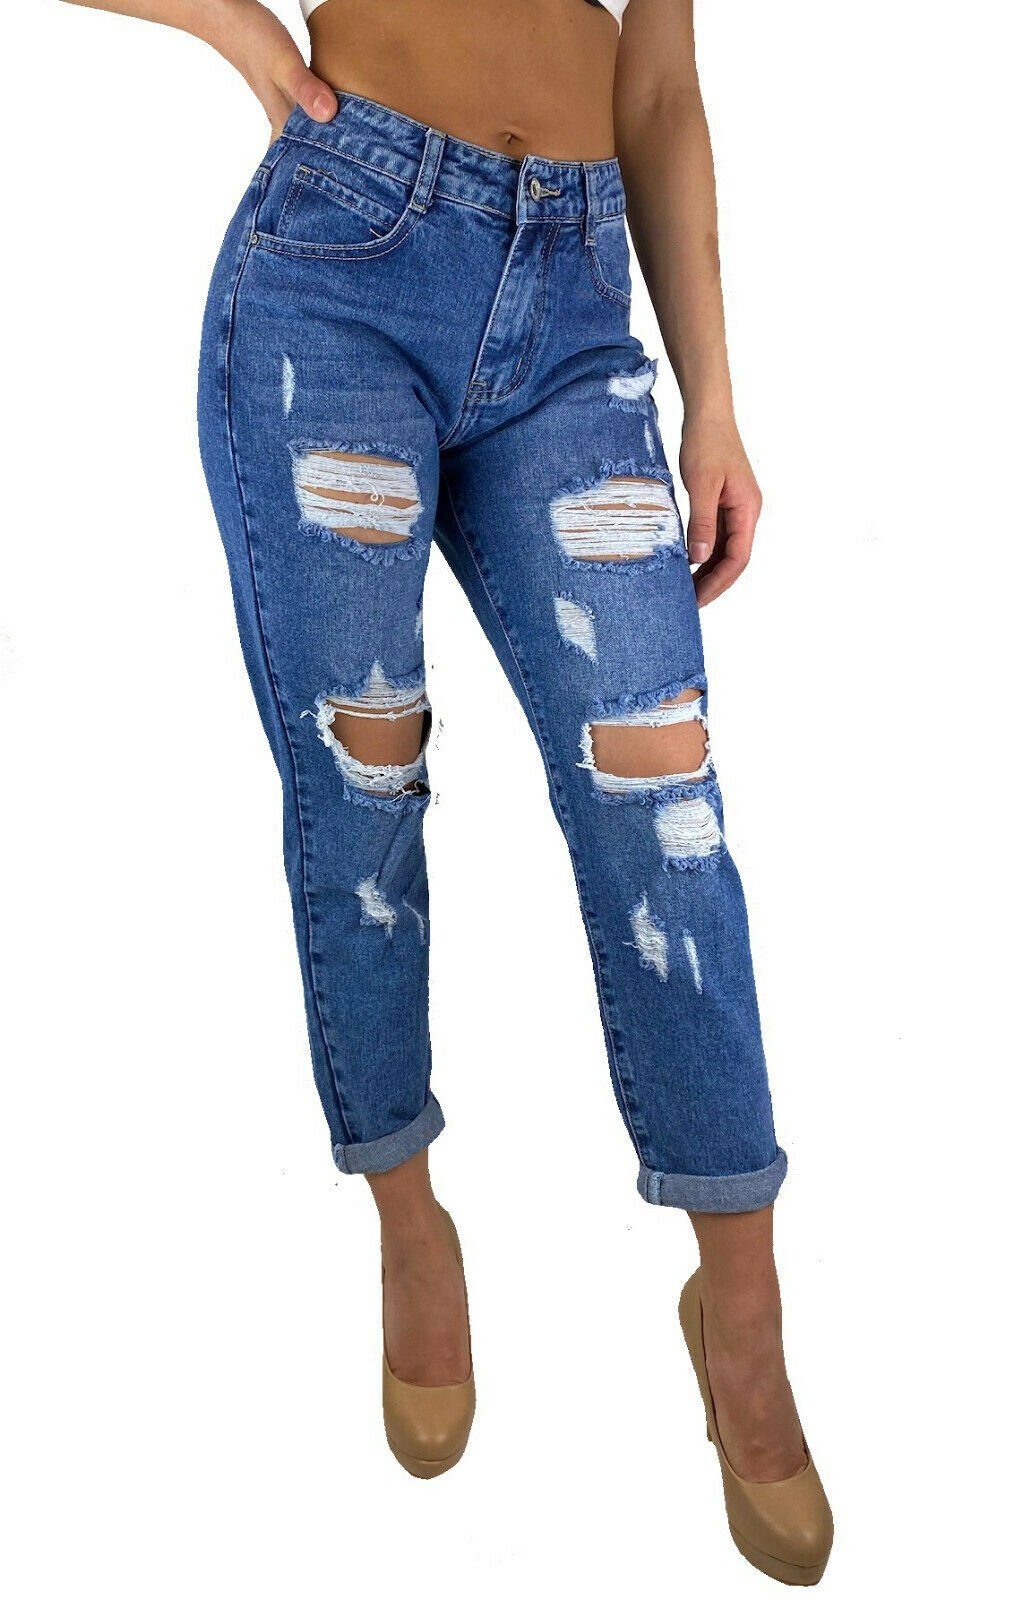 Only Damen Jeans Skinny Fit Stretch Denim Damenhose Hose Casual Used Look NEU 